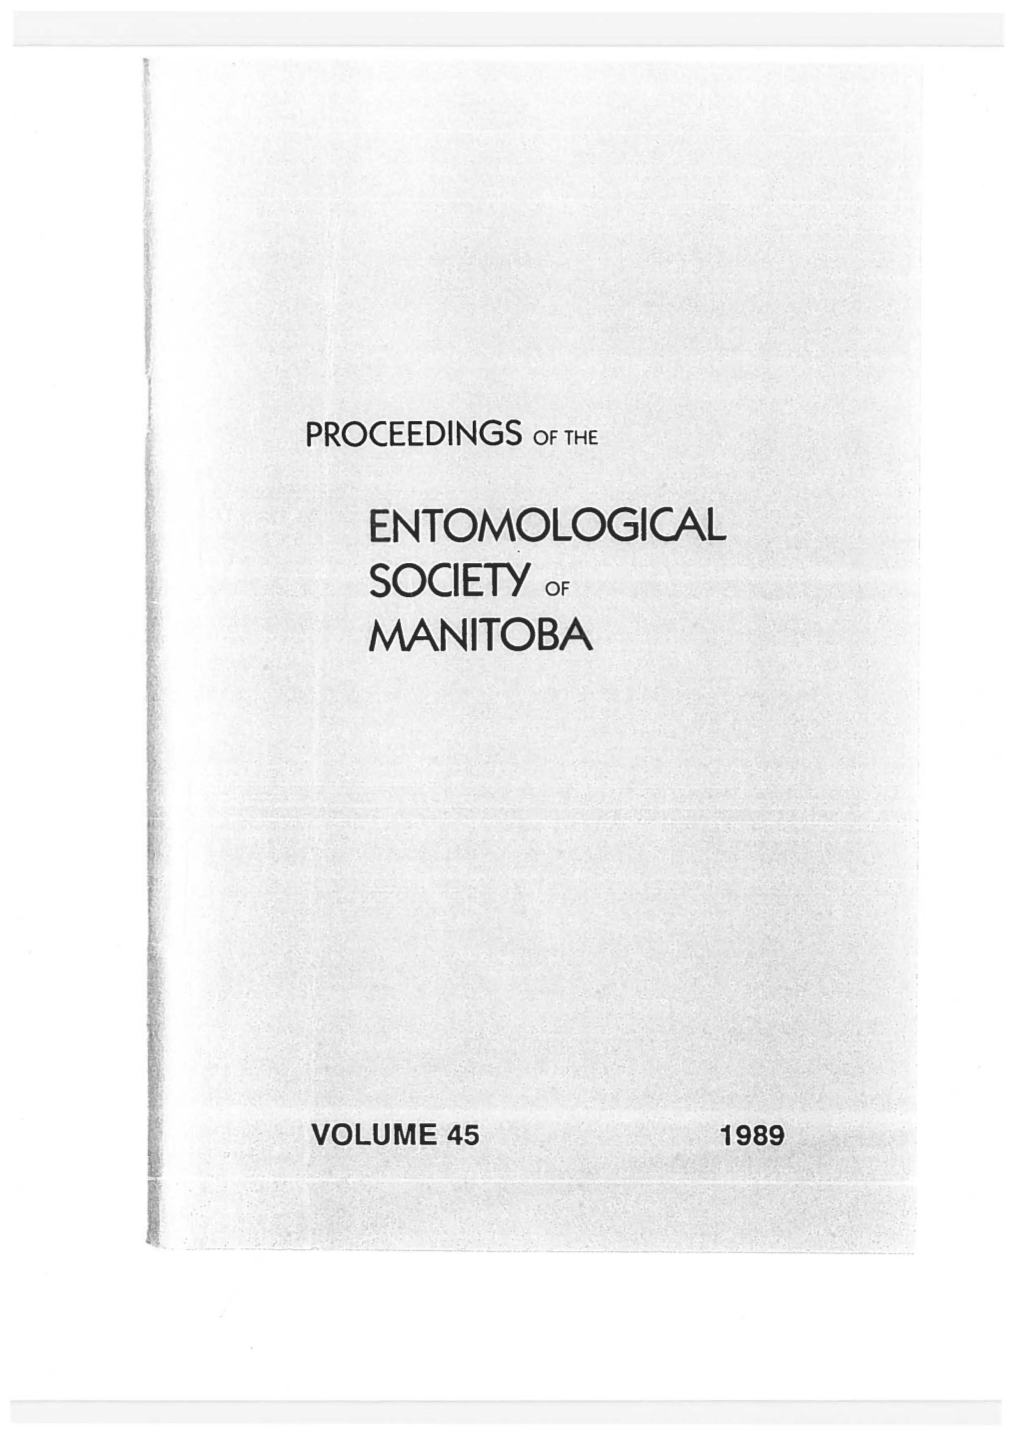 Proc Ent Soc Mb 1989, Volume 45